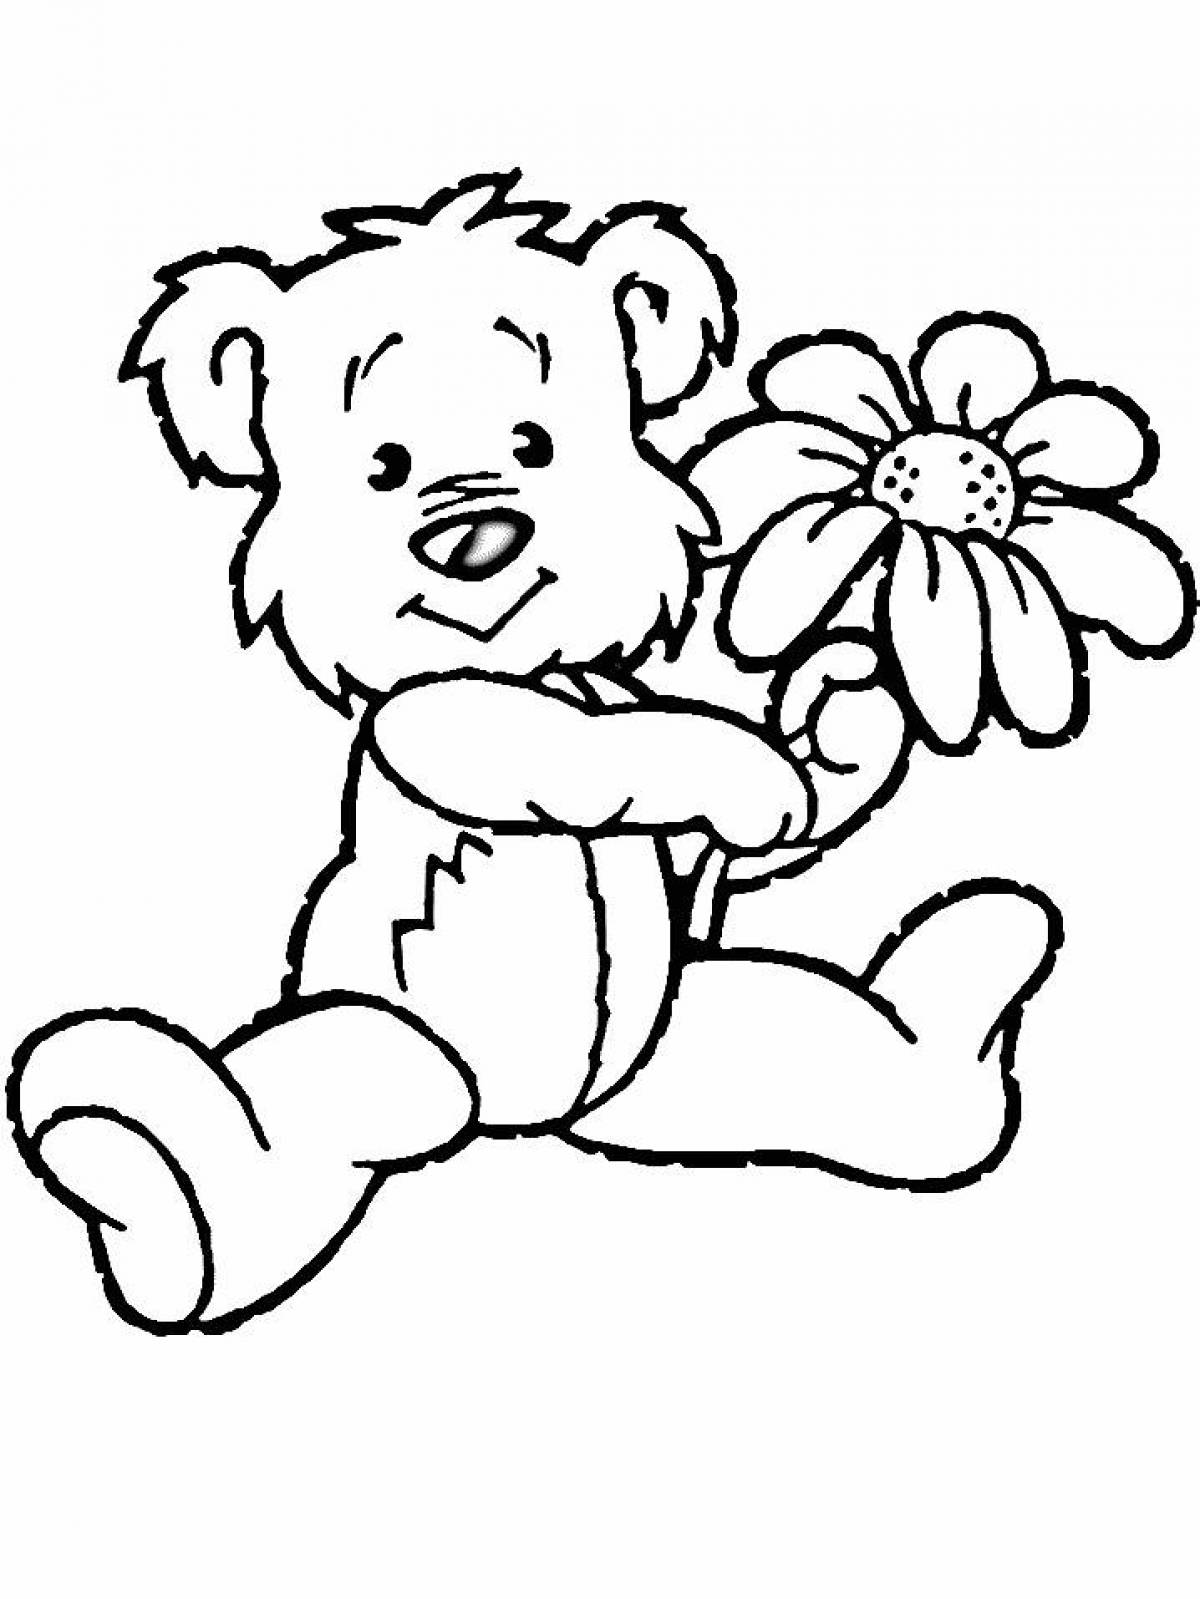 Teddy bear with a flower